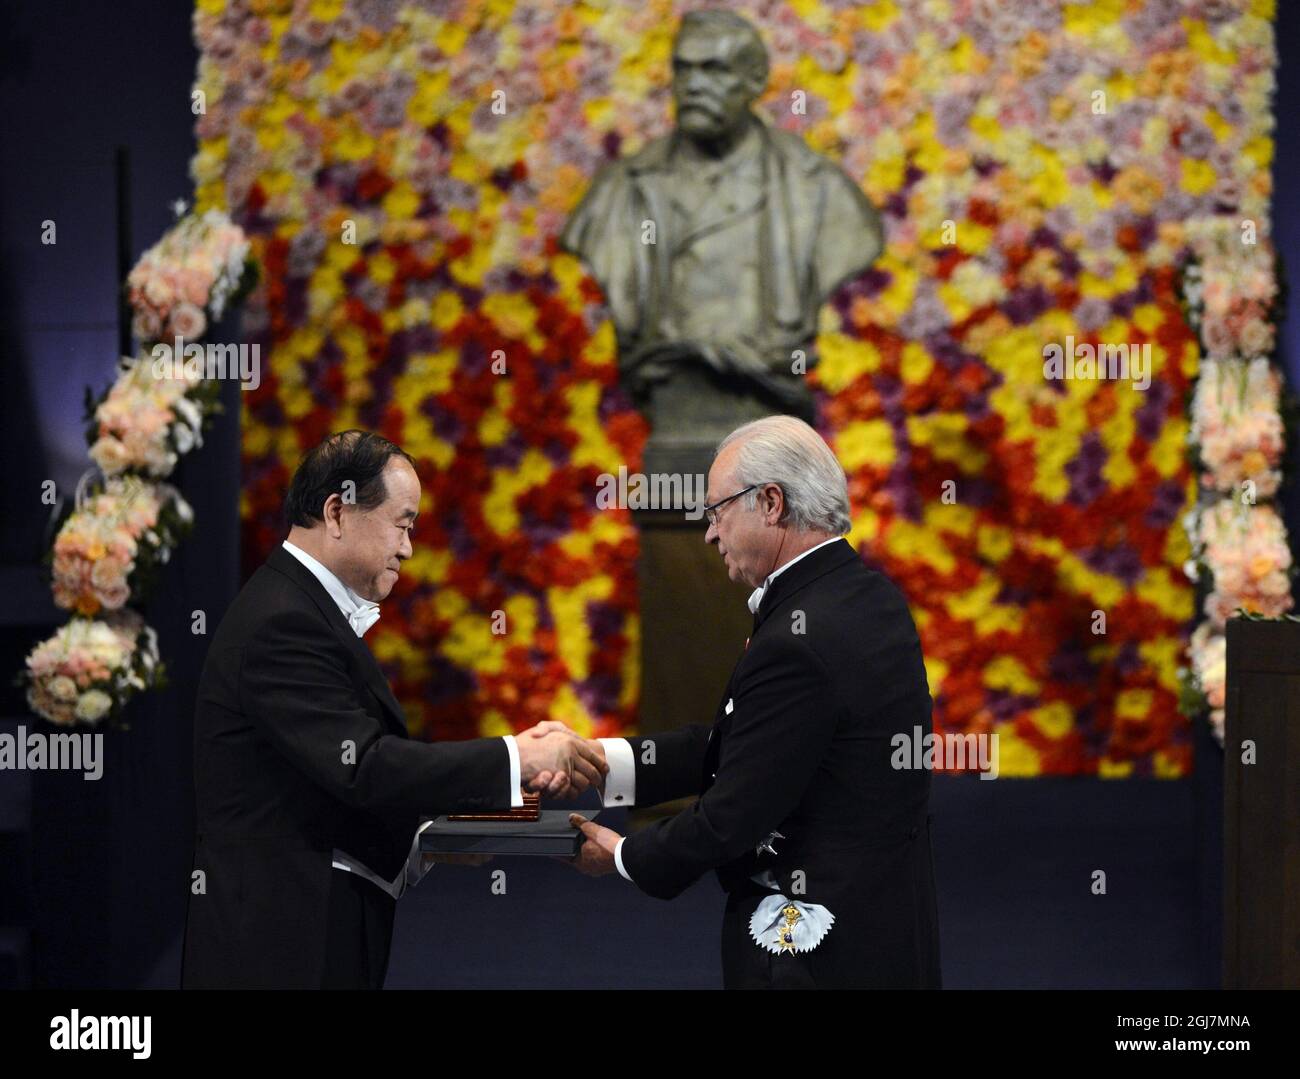 ESTOCOLMO 20121210 Mo Yan de China recibe el Premio Nobel de Literatura 2012 del Rey Carl Gustaf durante la Ceremonia del Premio Nobel en la Sala de Conciertos de Estocolmo Suecia, el 10 de diciembre de 2012. Foto Henrik Montgomery / SCANPIX kod 10060 Foto de stock